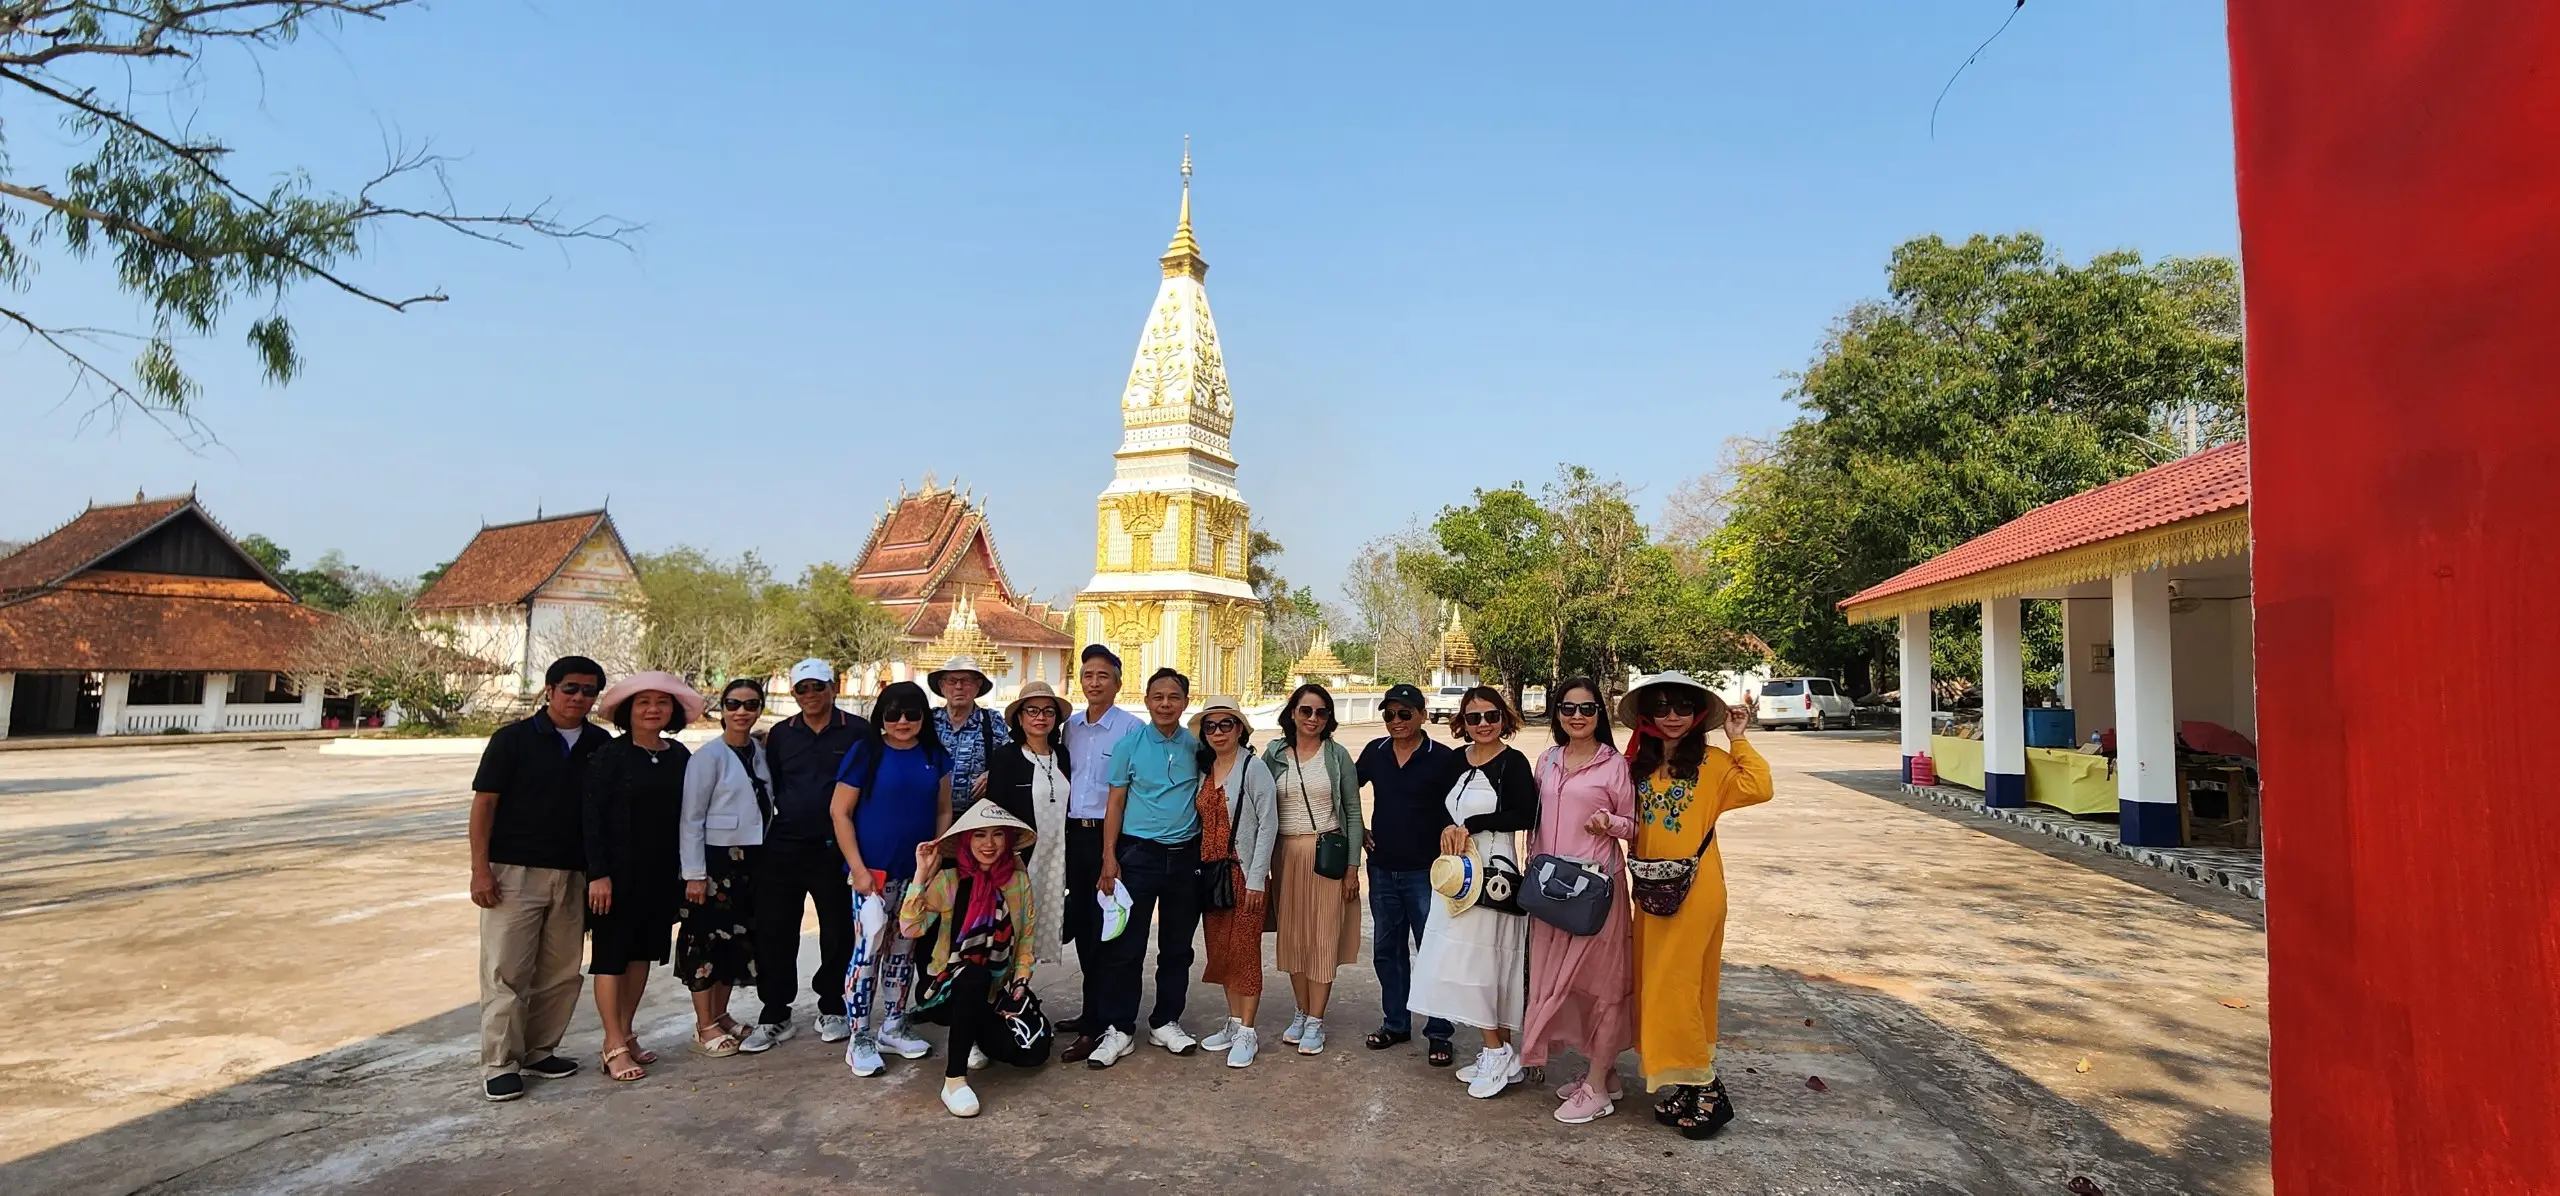 Tour tham quan Lào từ Đà Nẵng chất lượng